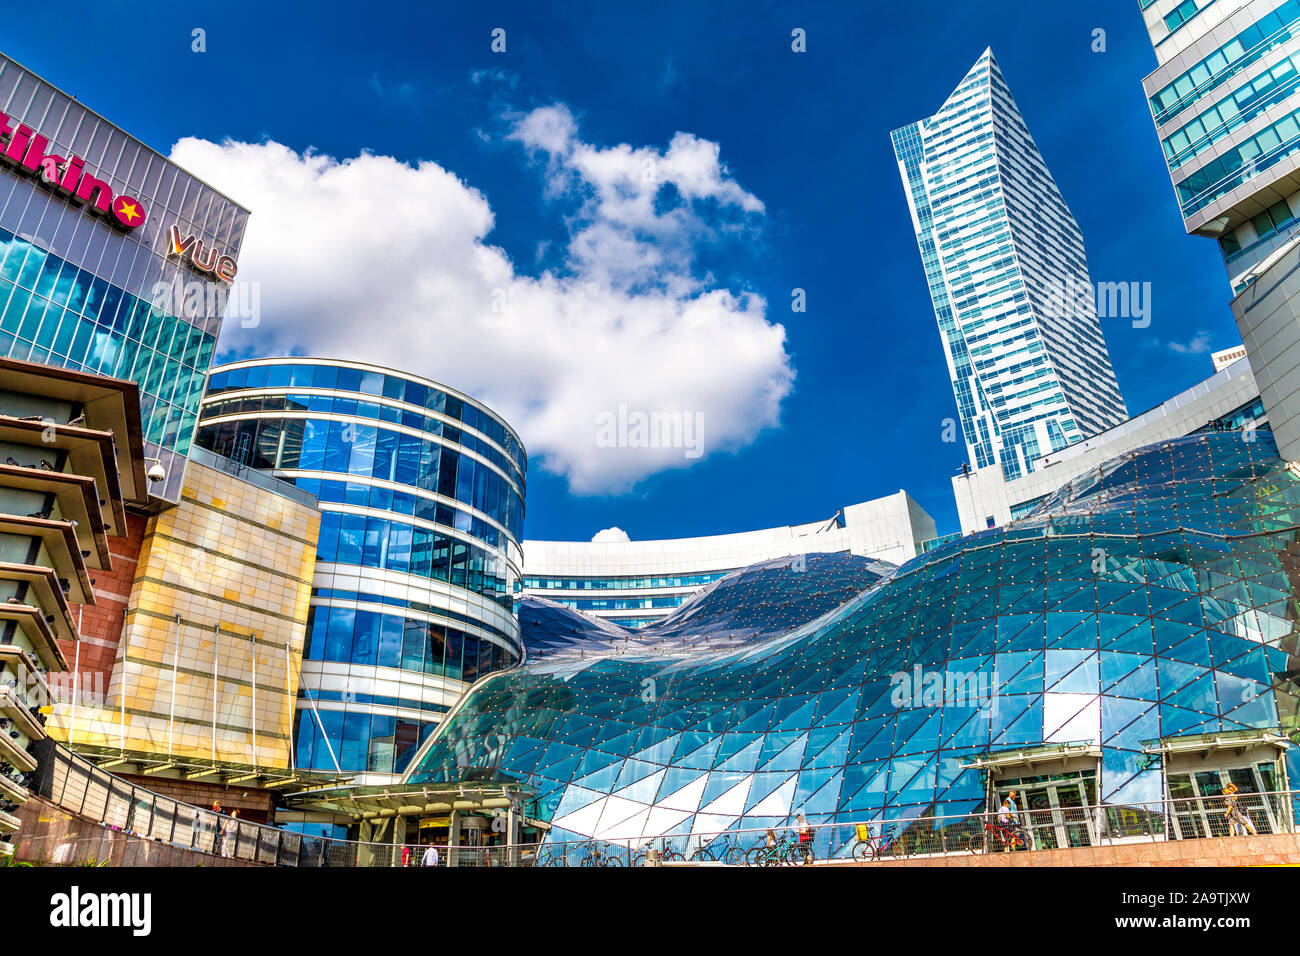 Les bâtiments en verre contemporain sur le toit ondulé et du centre commercial Zlote Tarasy, Varsovie, Pologne Banque D'Images